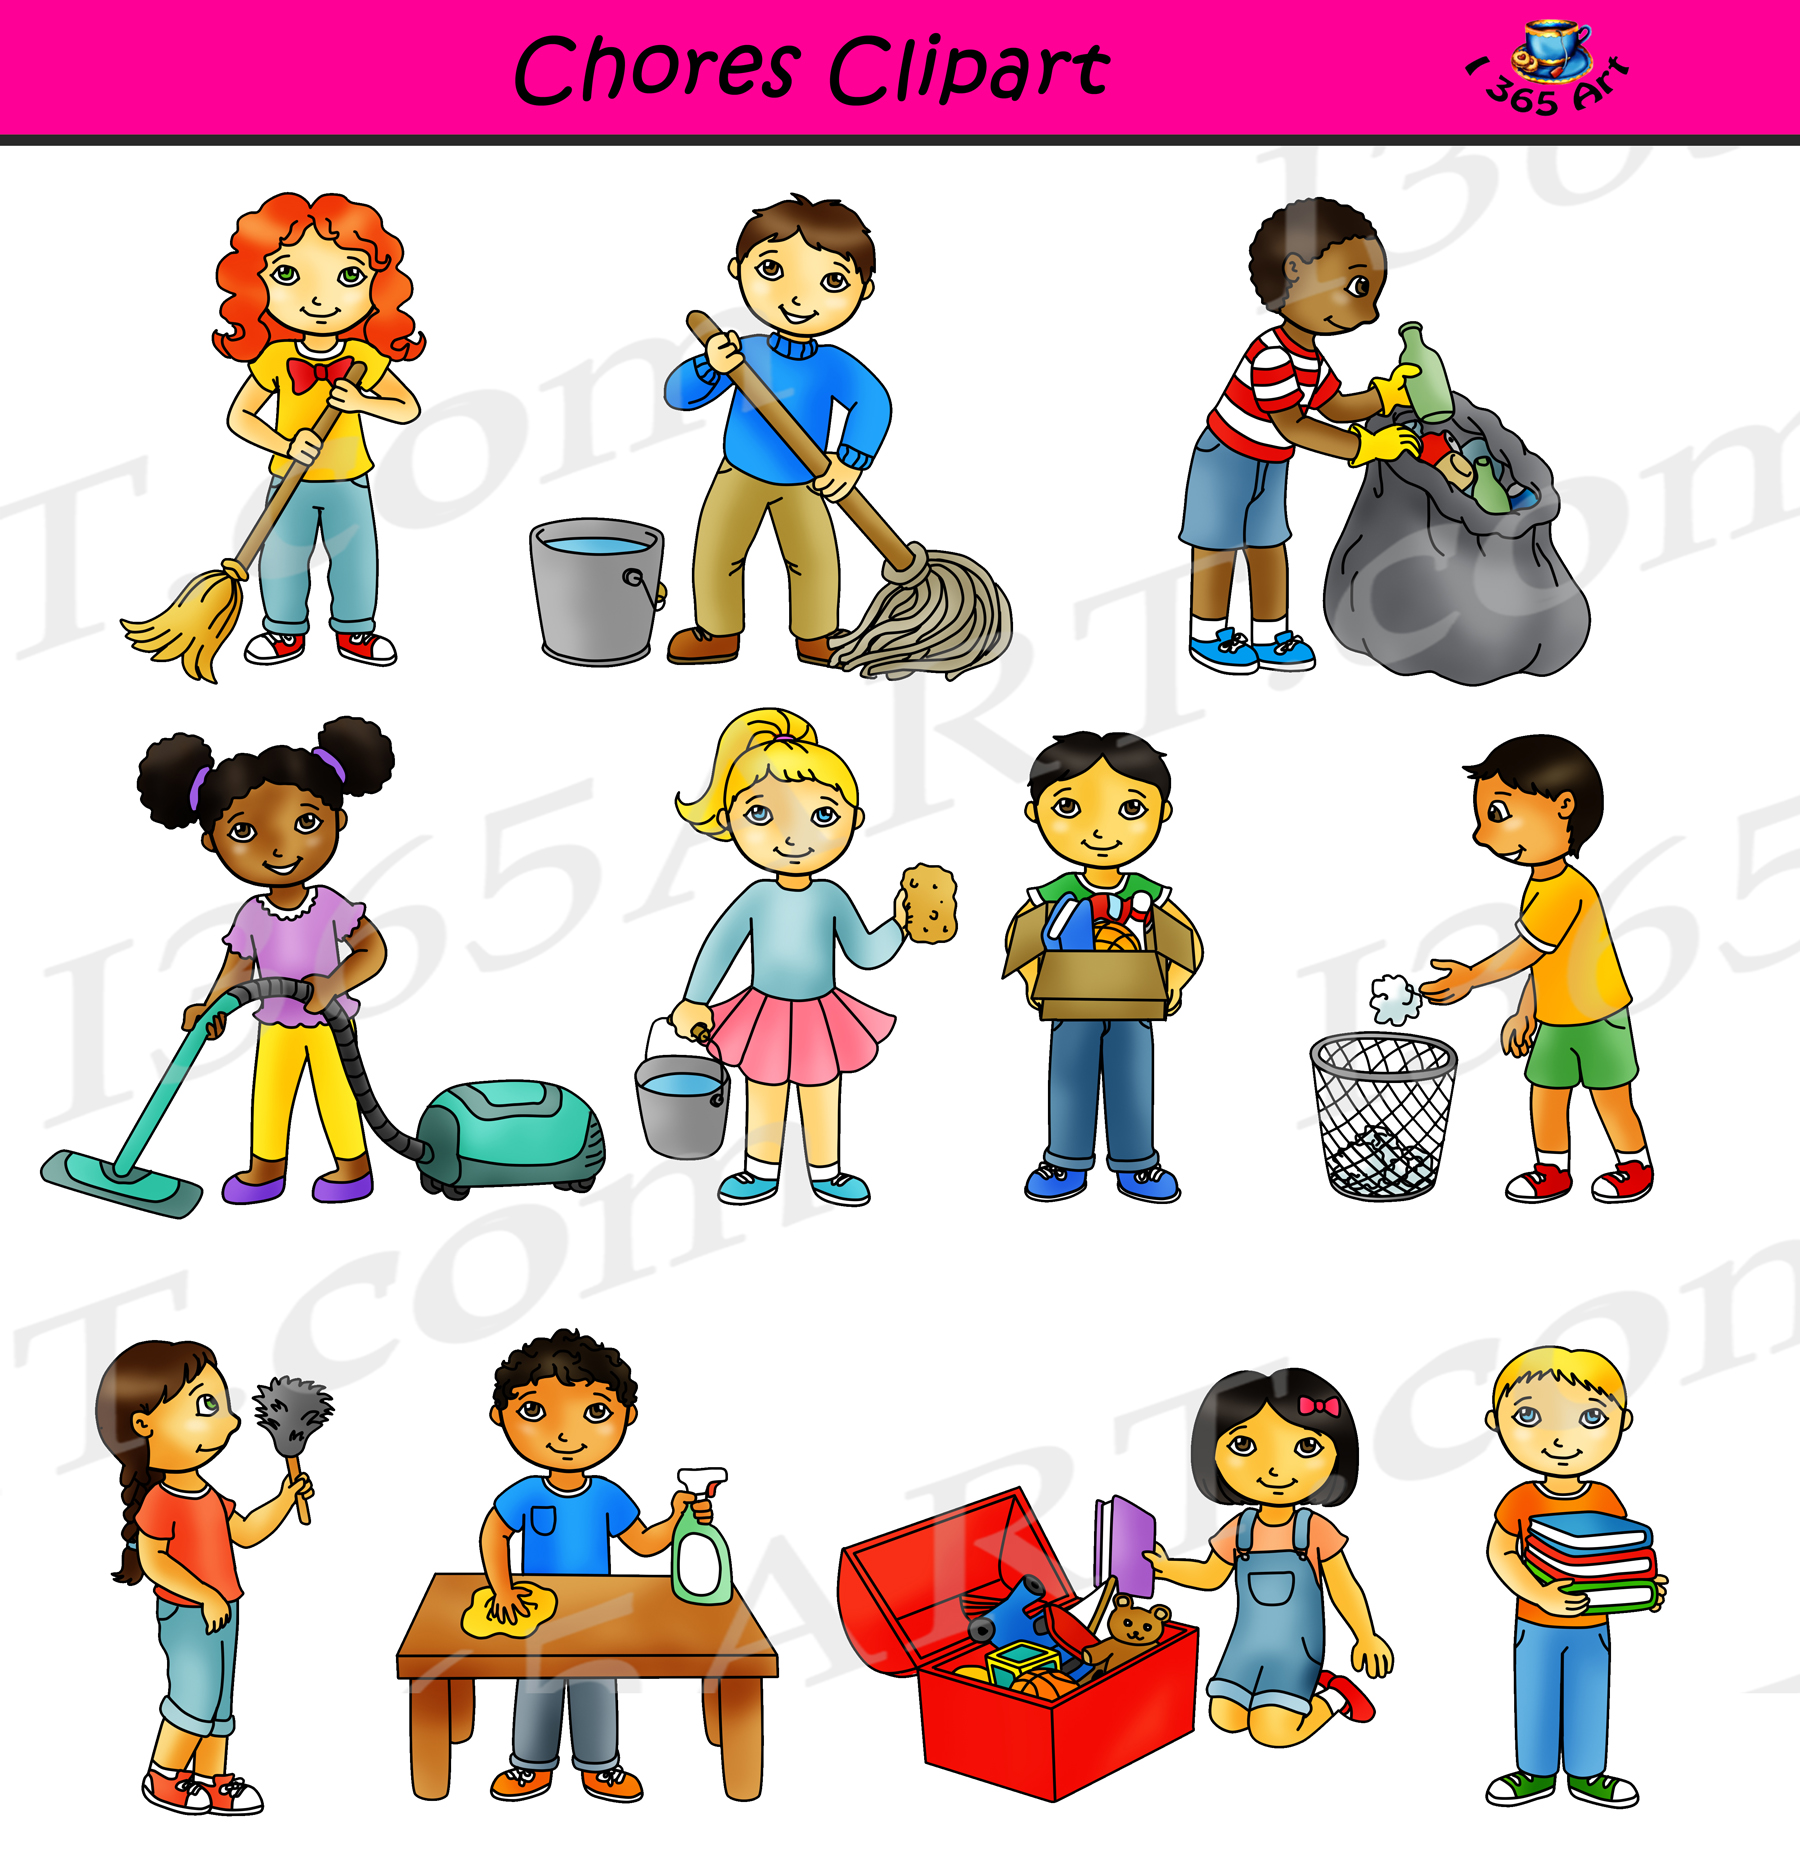 clean up classroom clip art